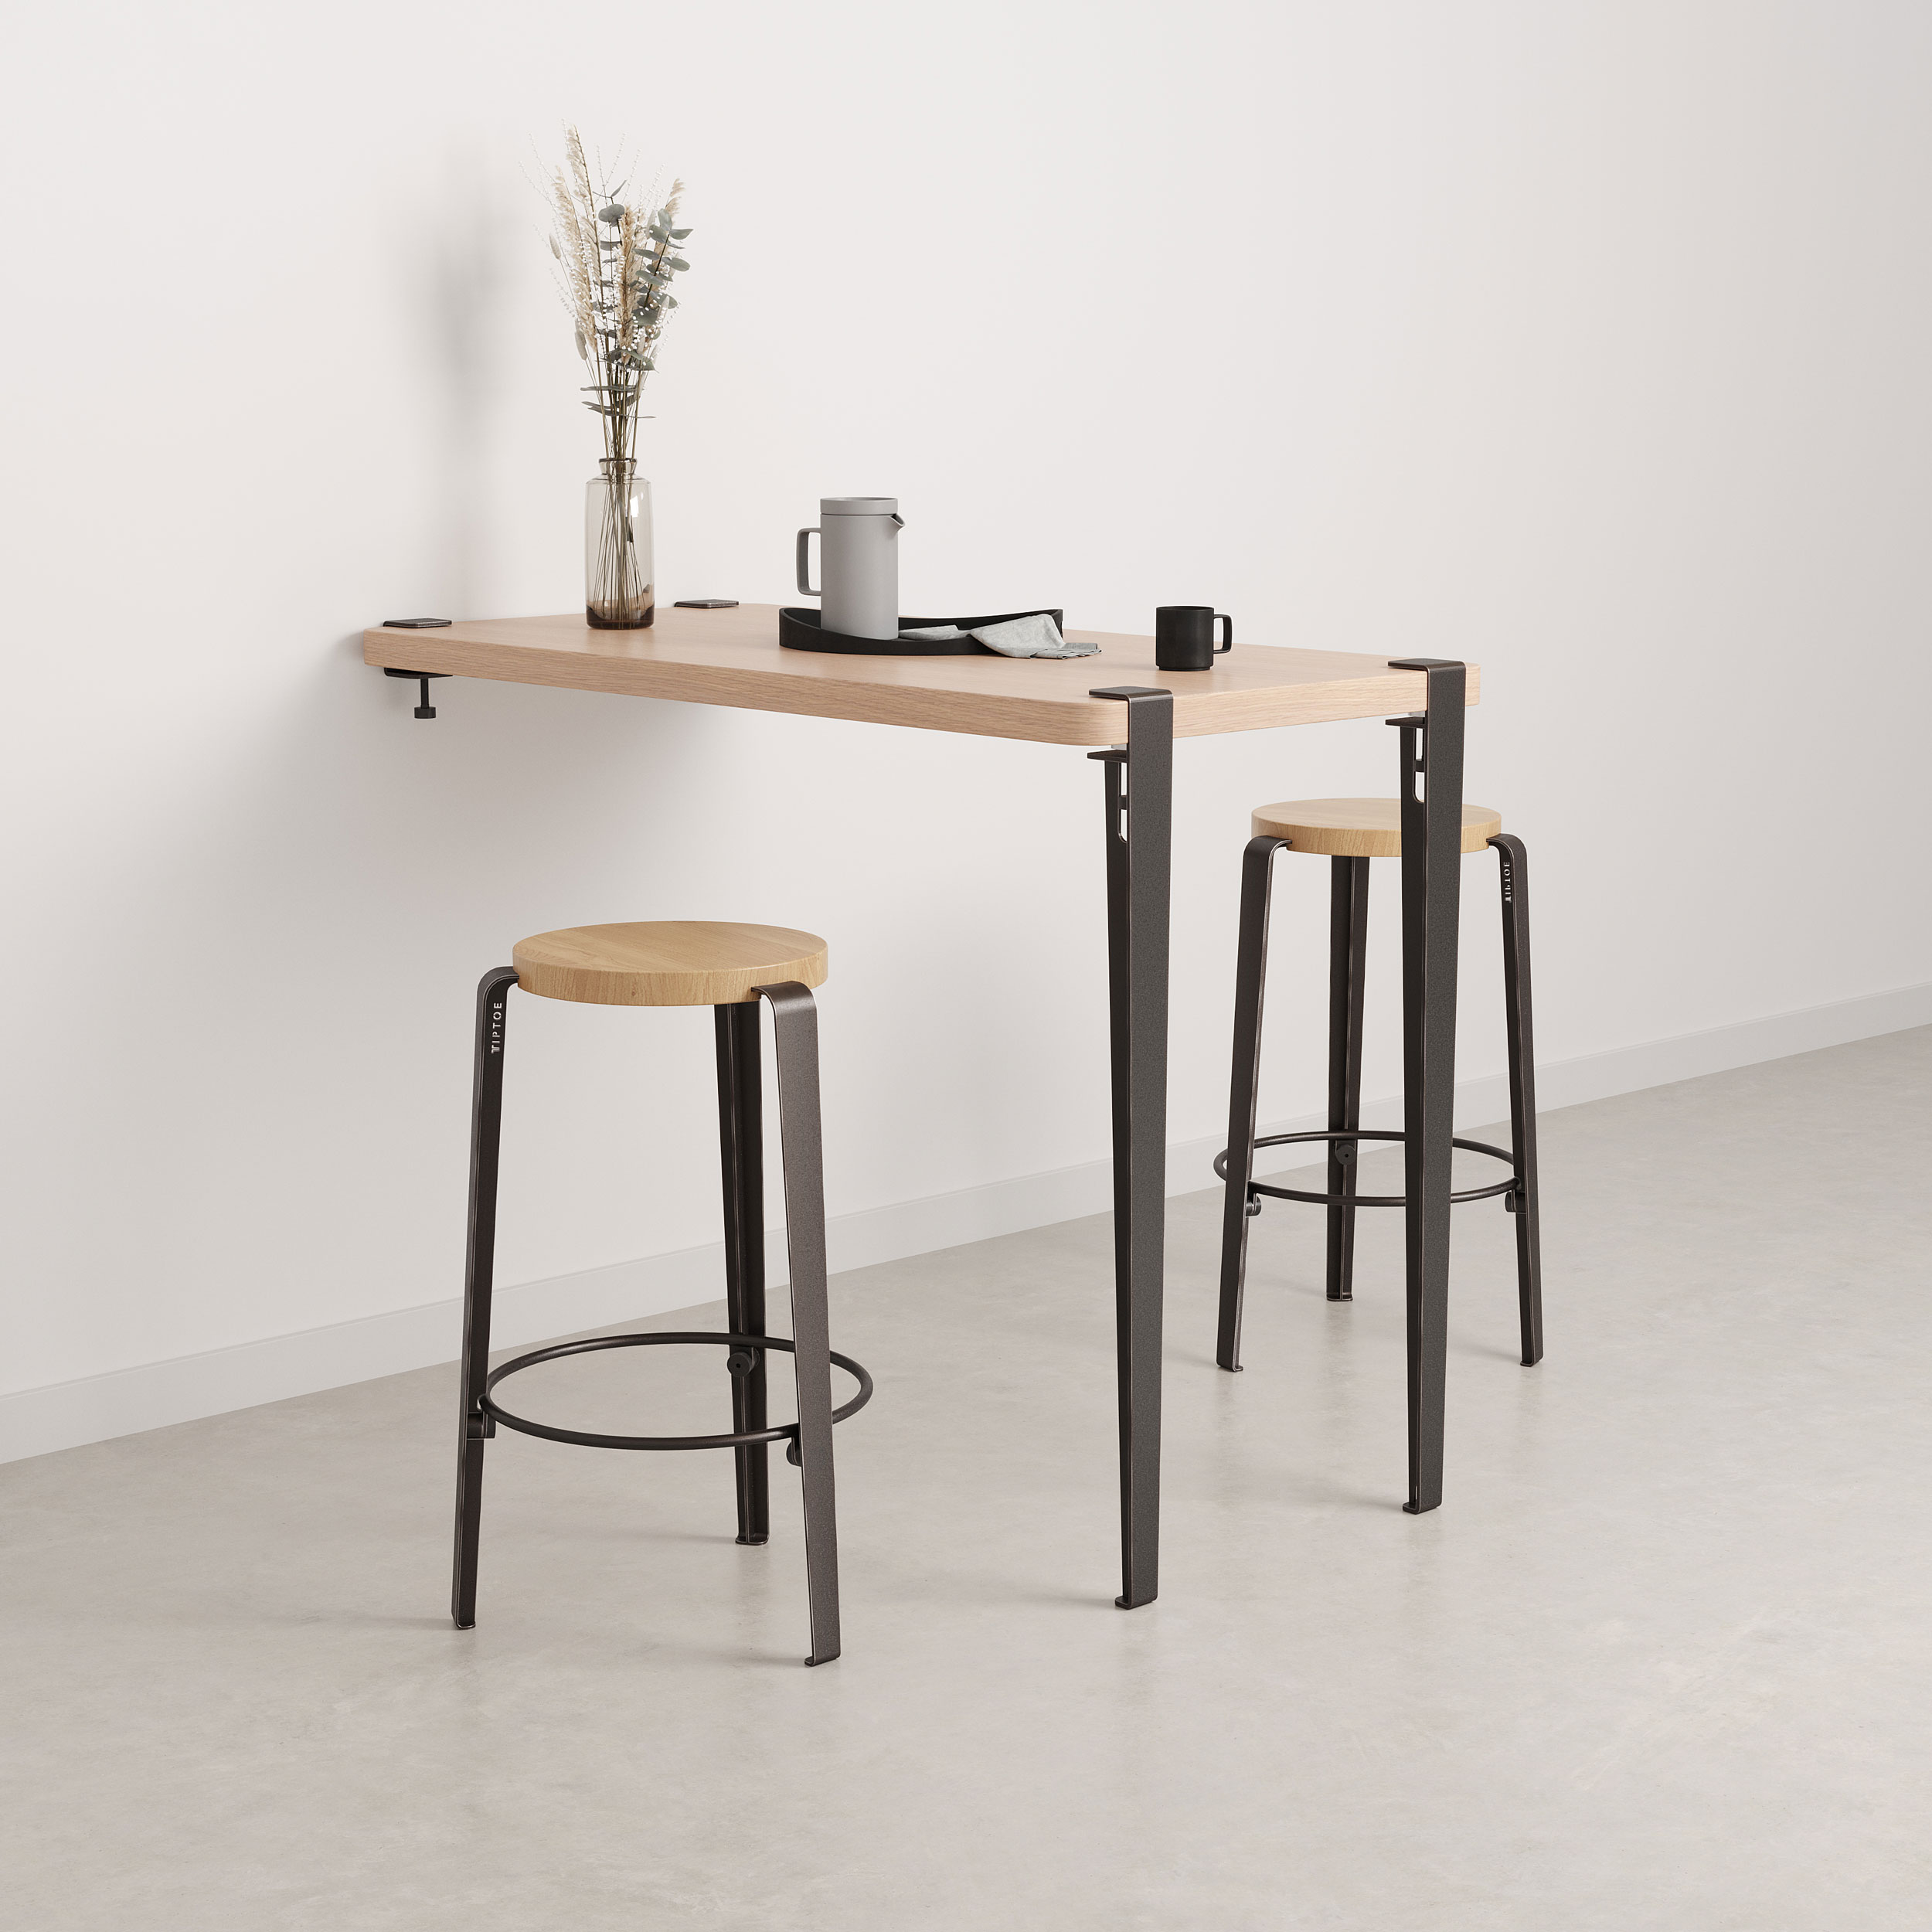 Counter table leg – 90 cm